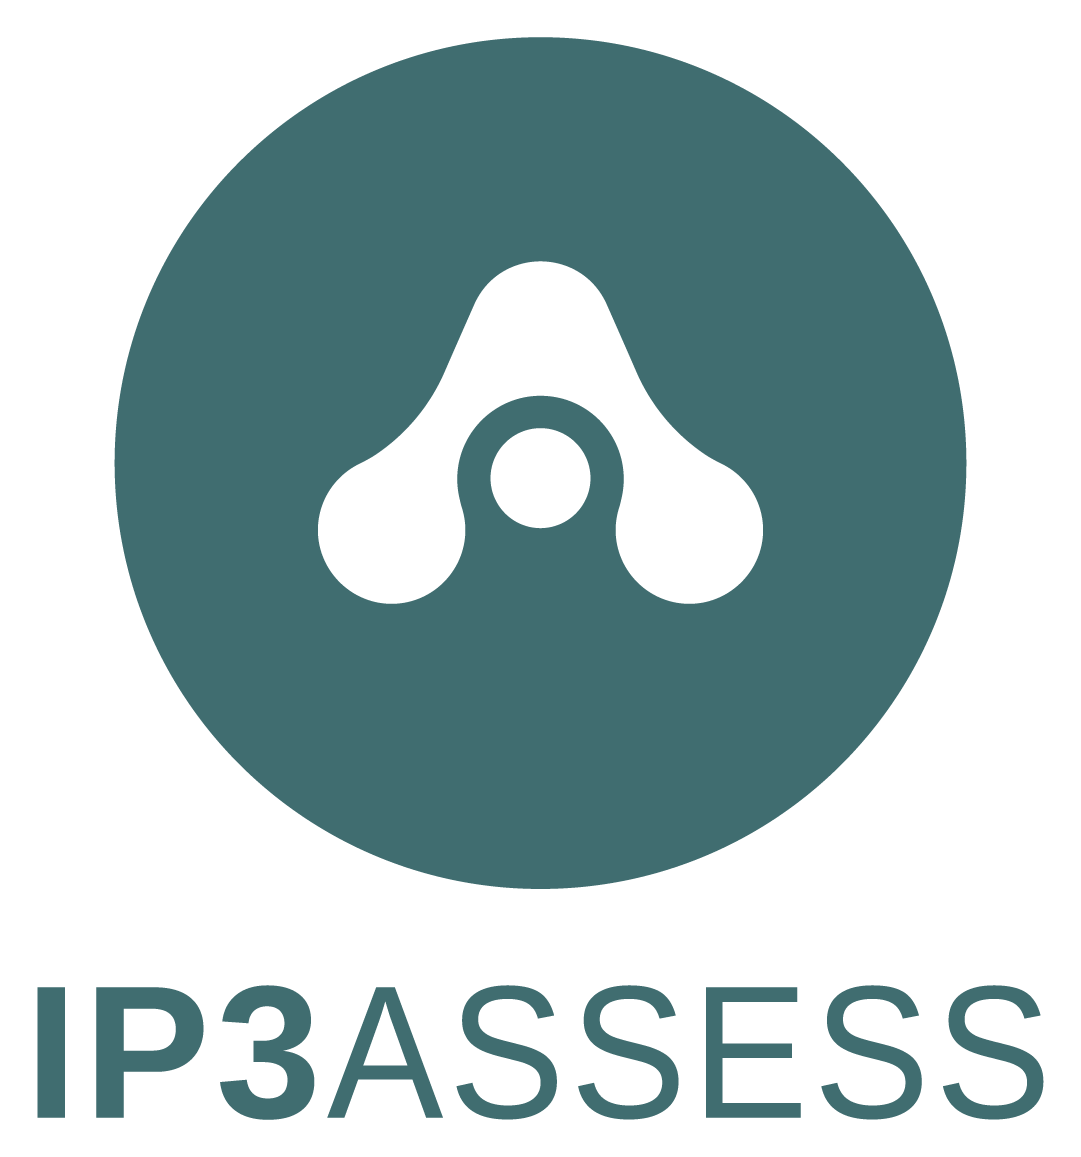 IP3 ASSESS